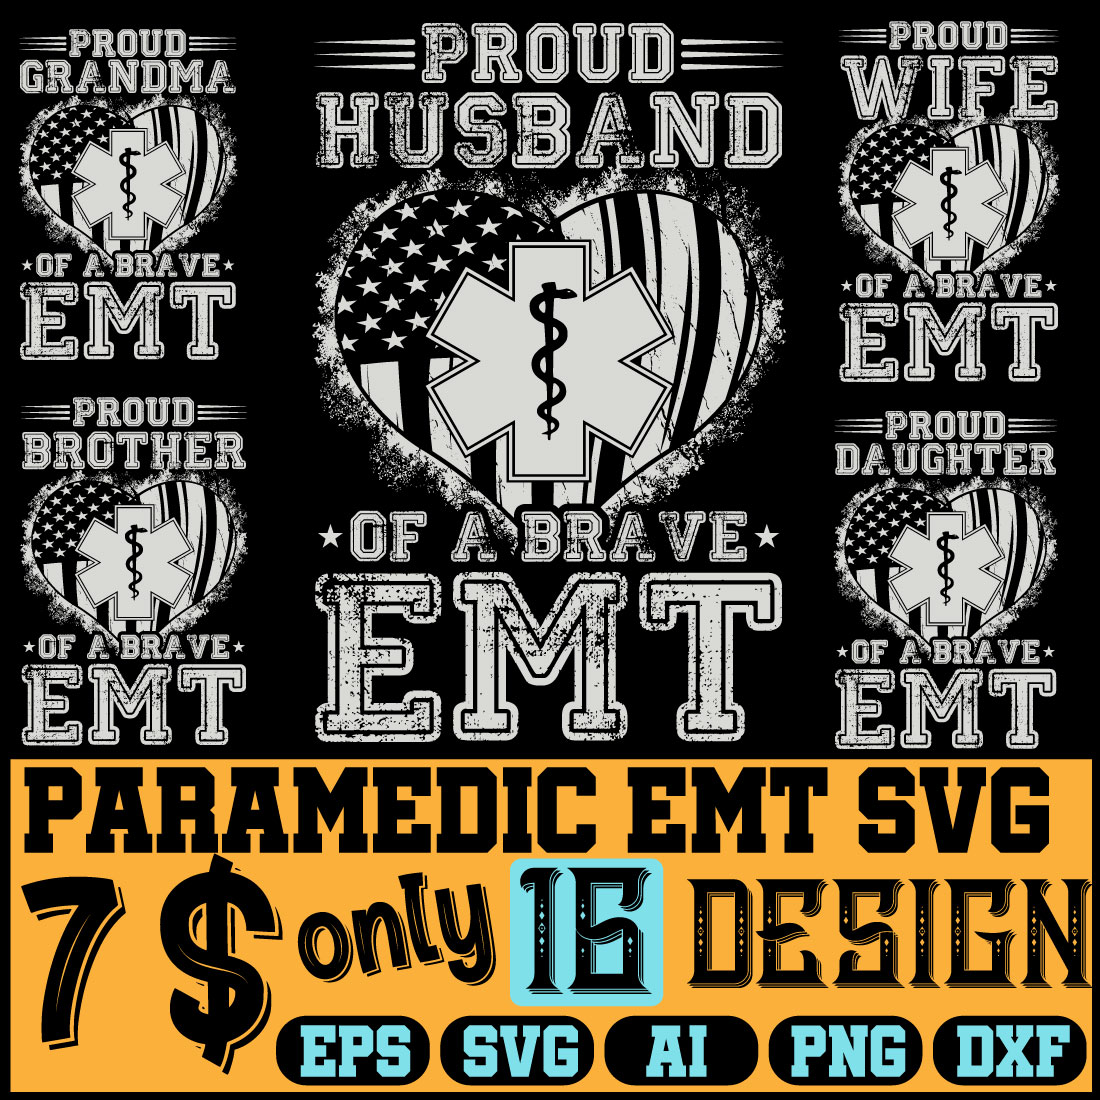 T-shirt Paramedic EMT SVG Design cover image.